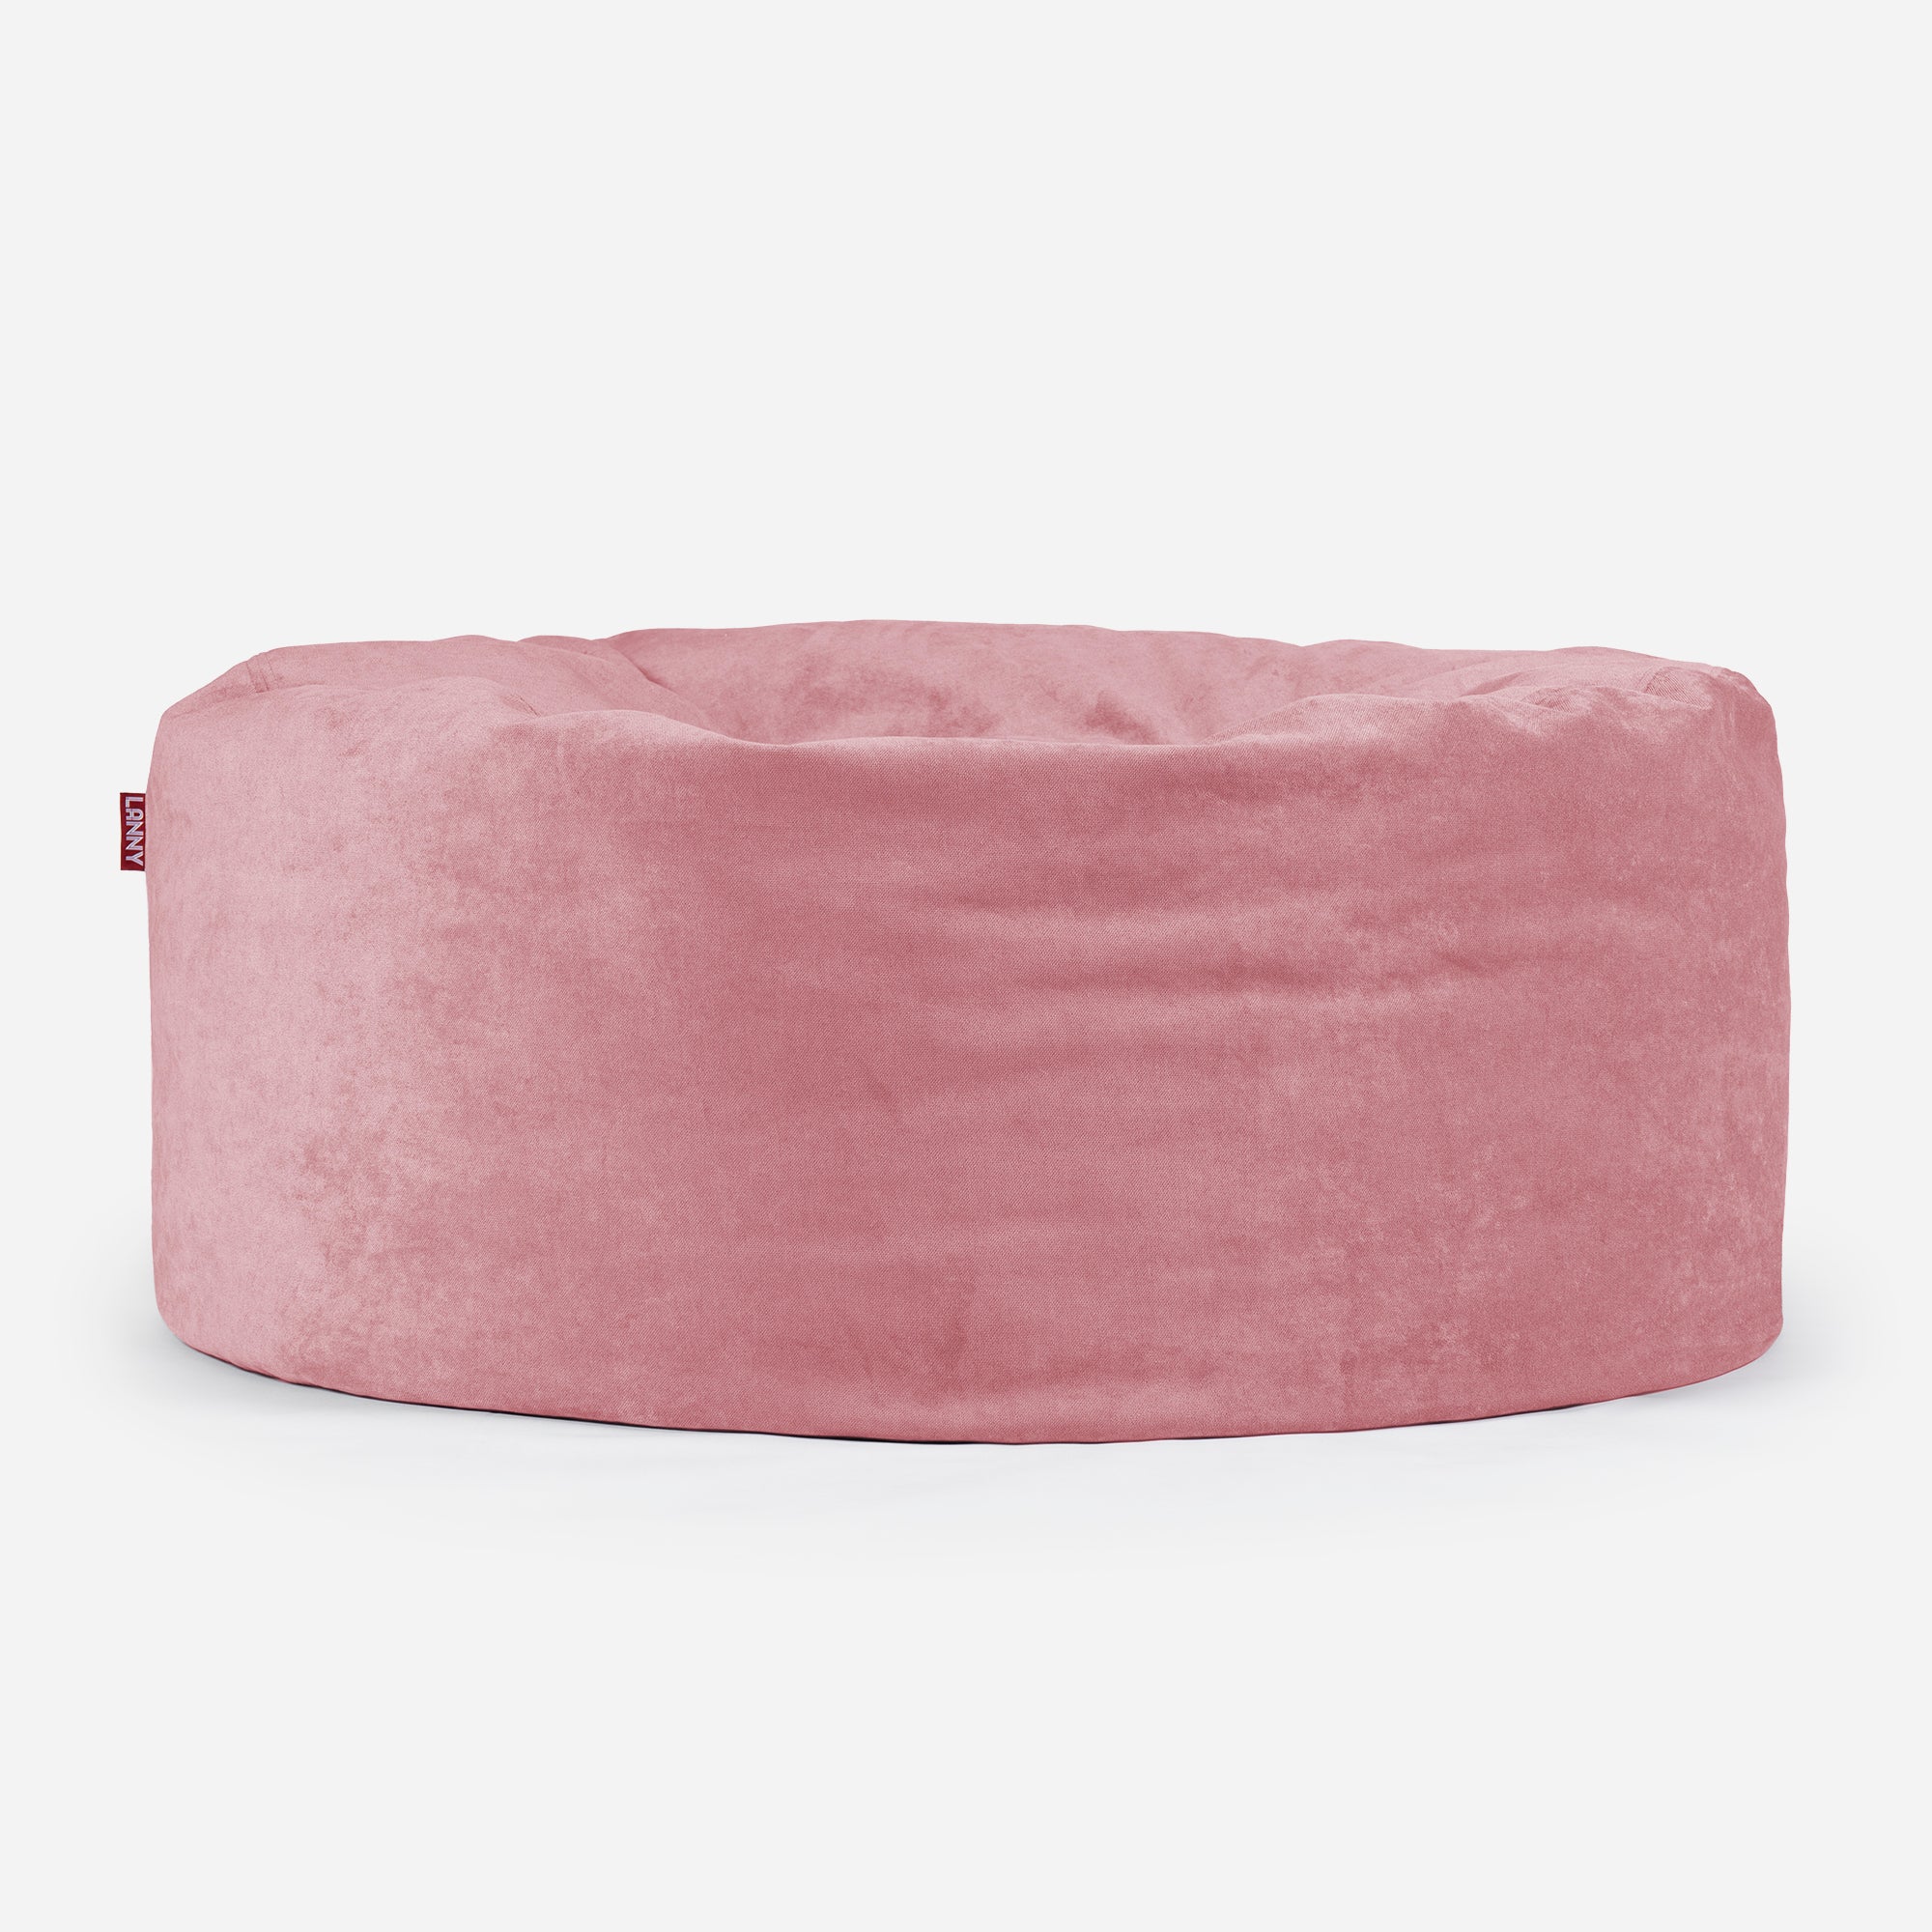 Large Original Aldo Pink Bean Bag